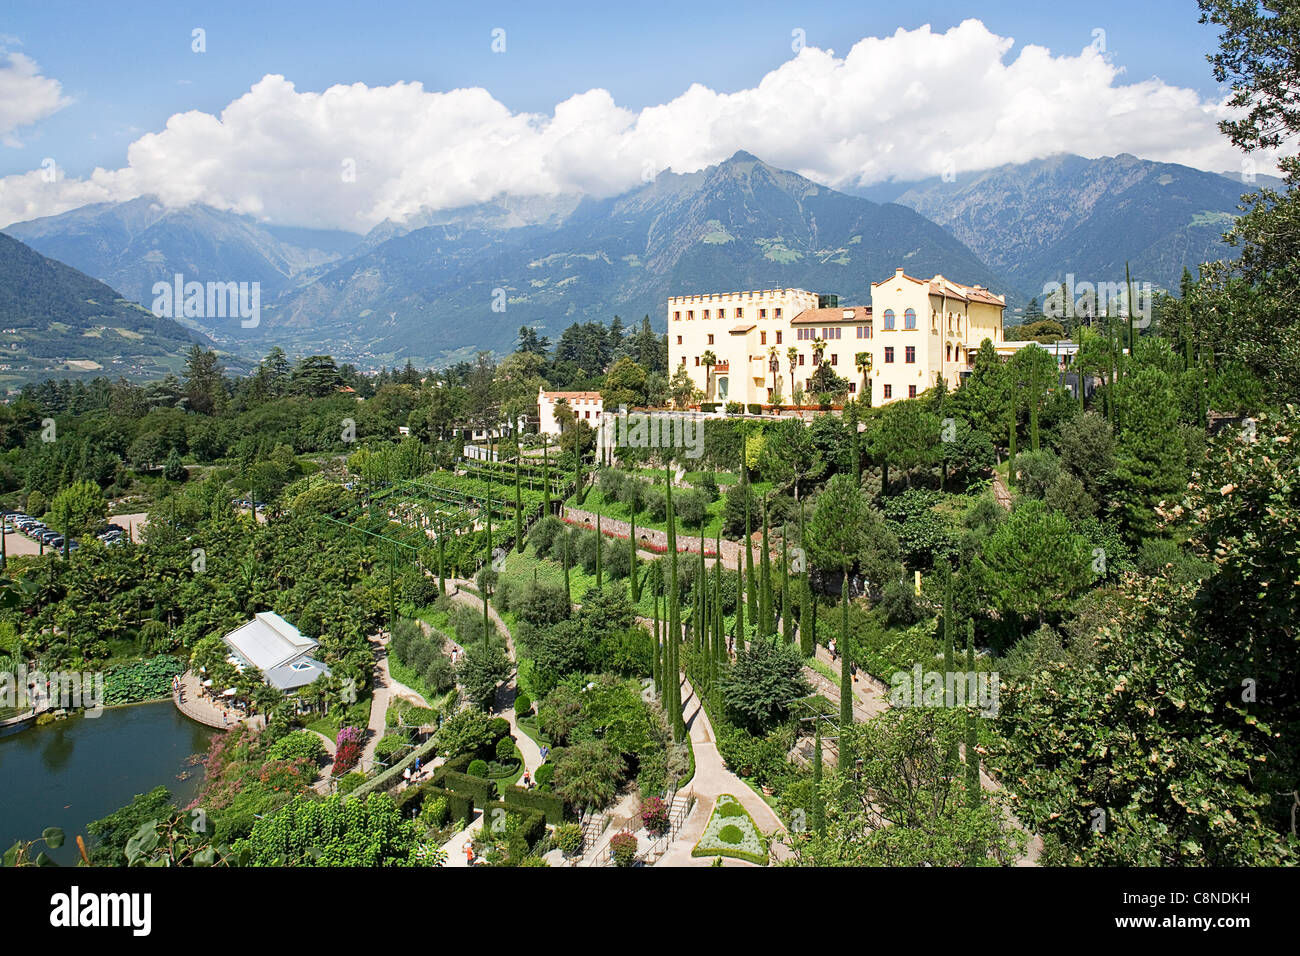 Blick auf Gärten von Trautmannsdorf, See und Schloss, Merano (Meran), Trentino-Alto Adige, Italien Stockfoto